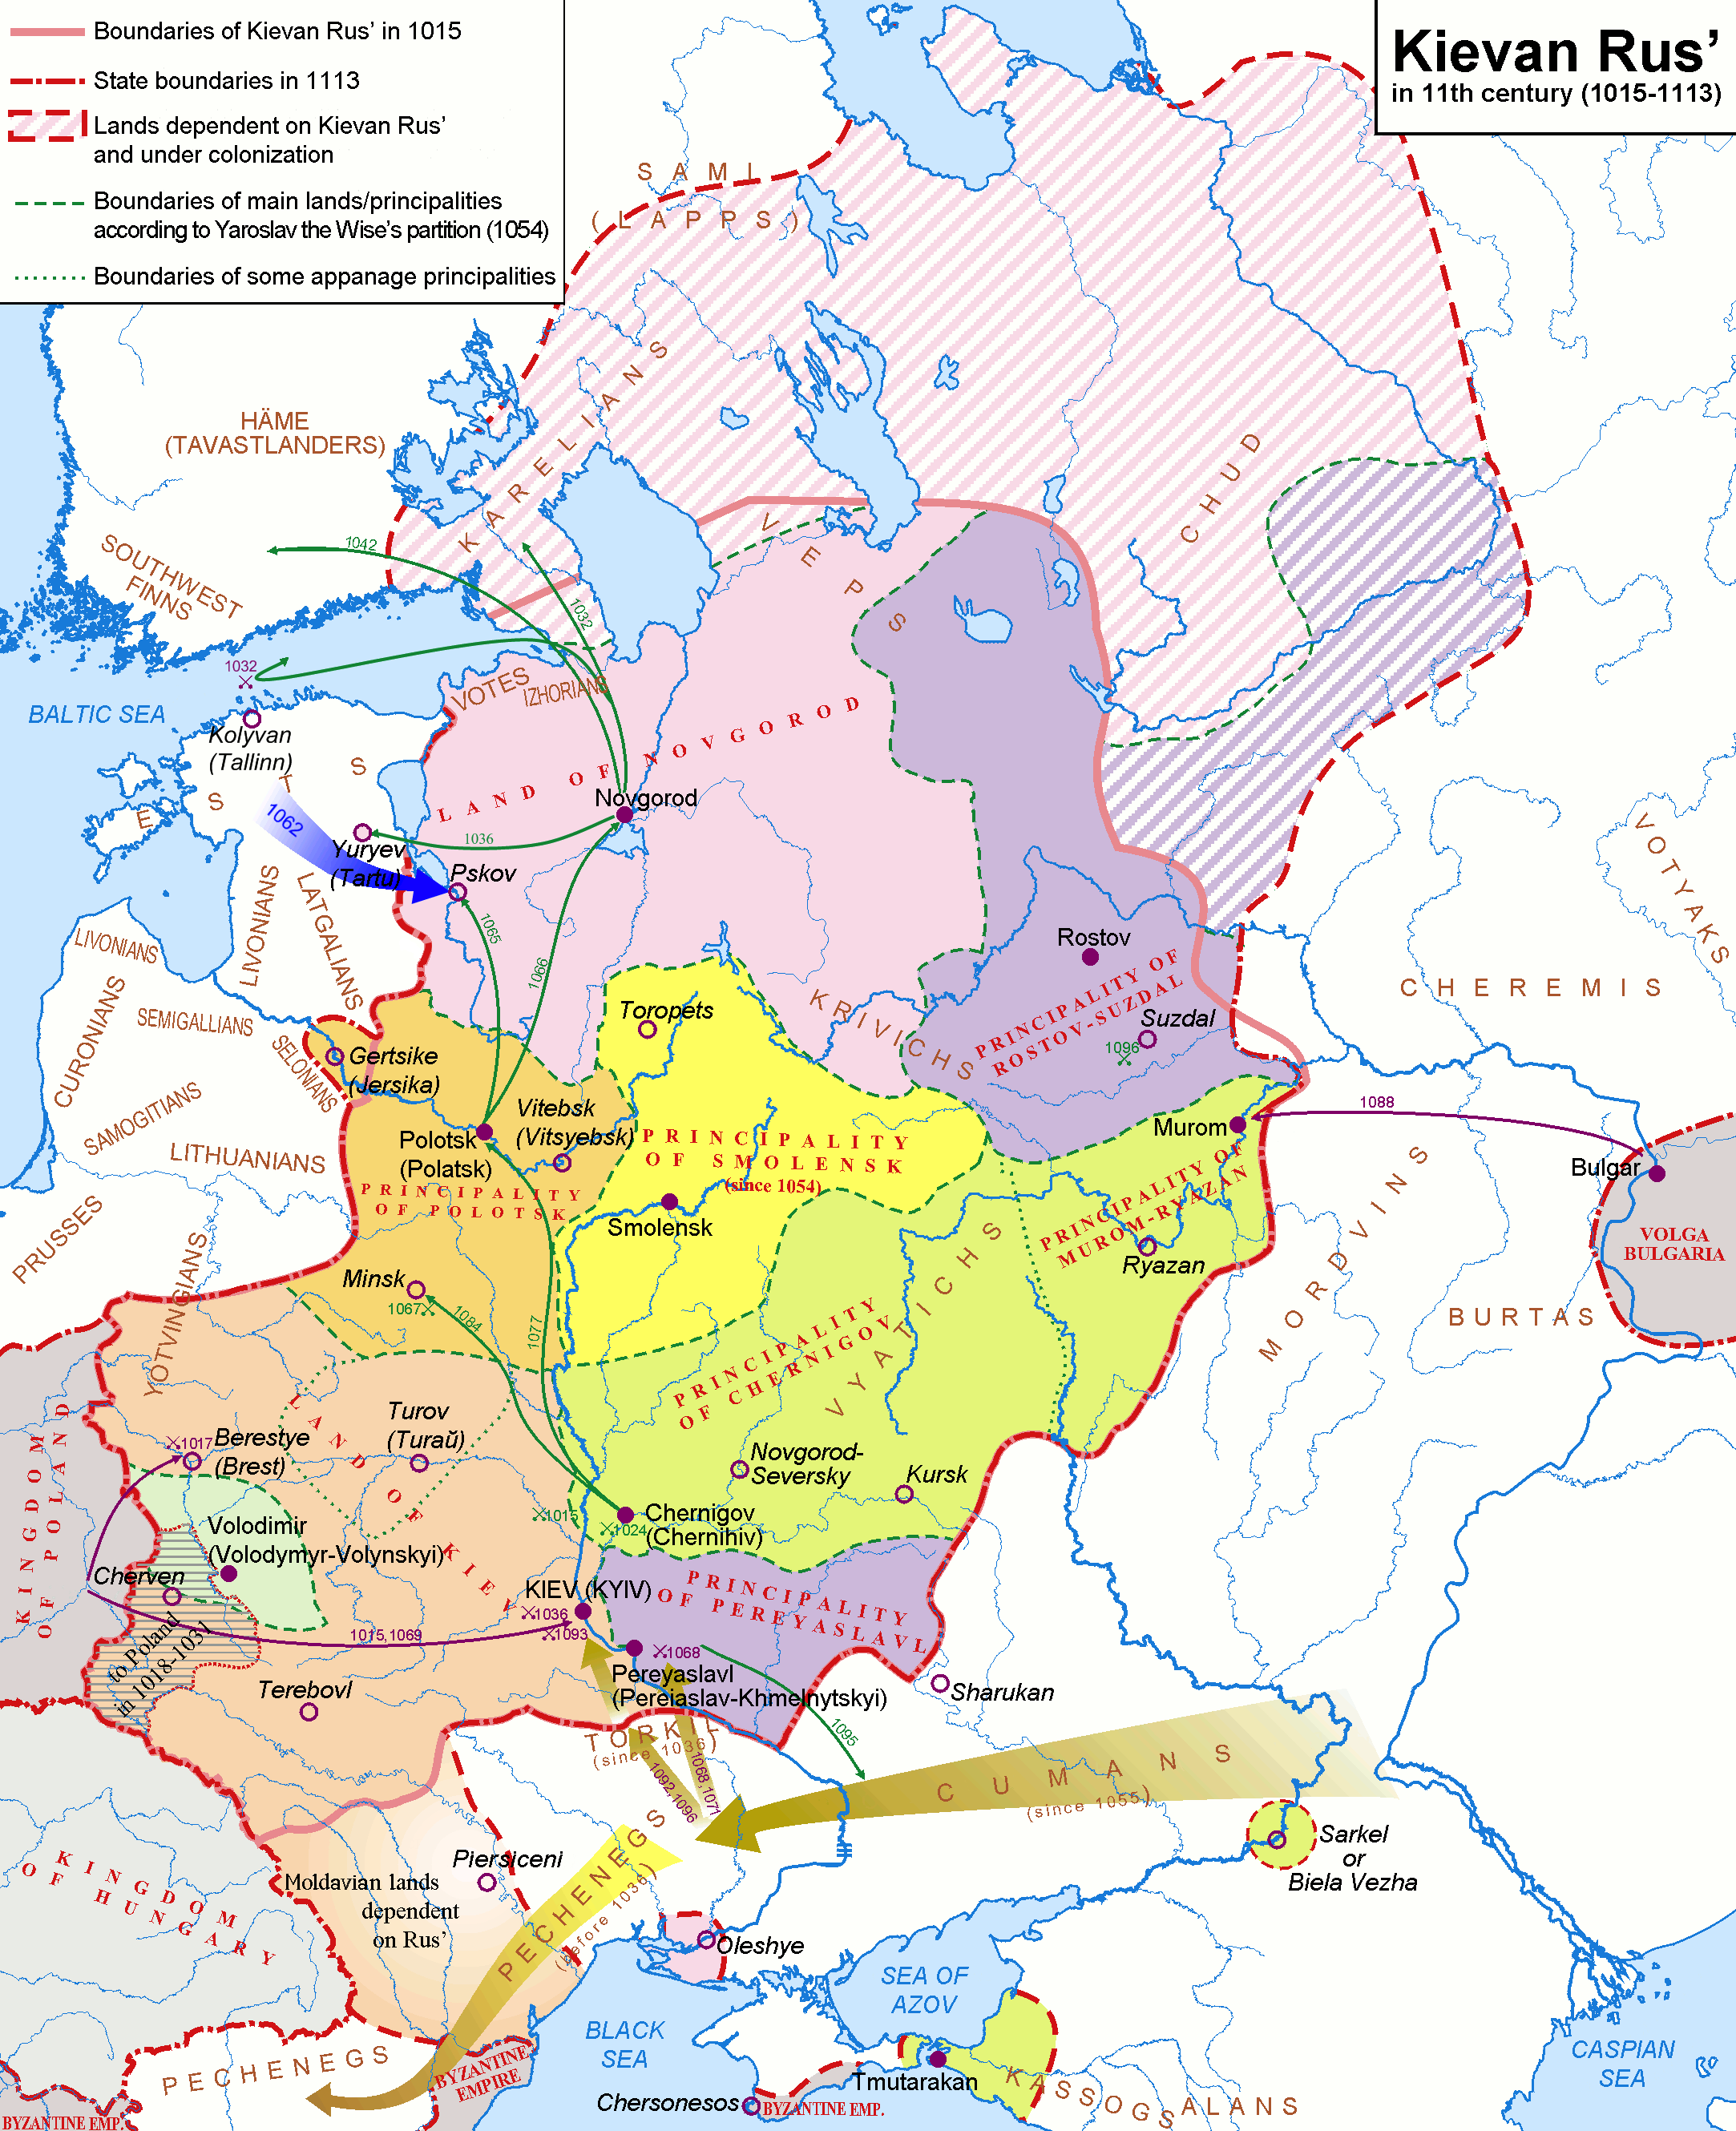 Fyrstendømmet Polotsk inden for det Kiev-russiske rige